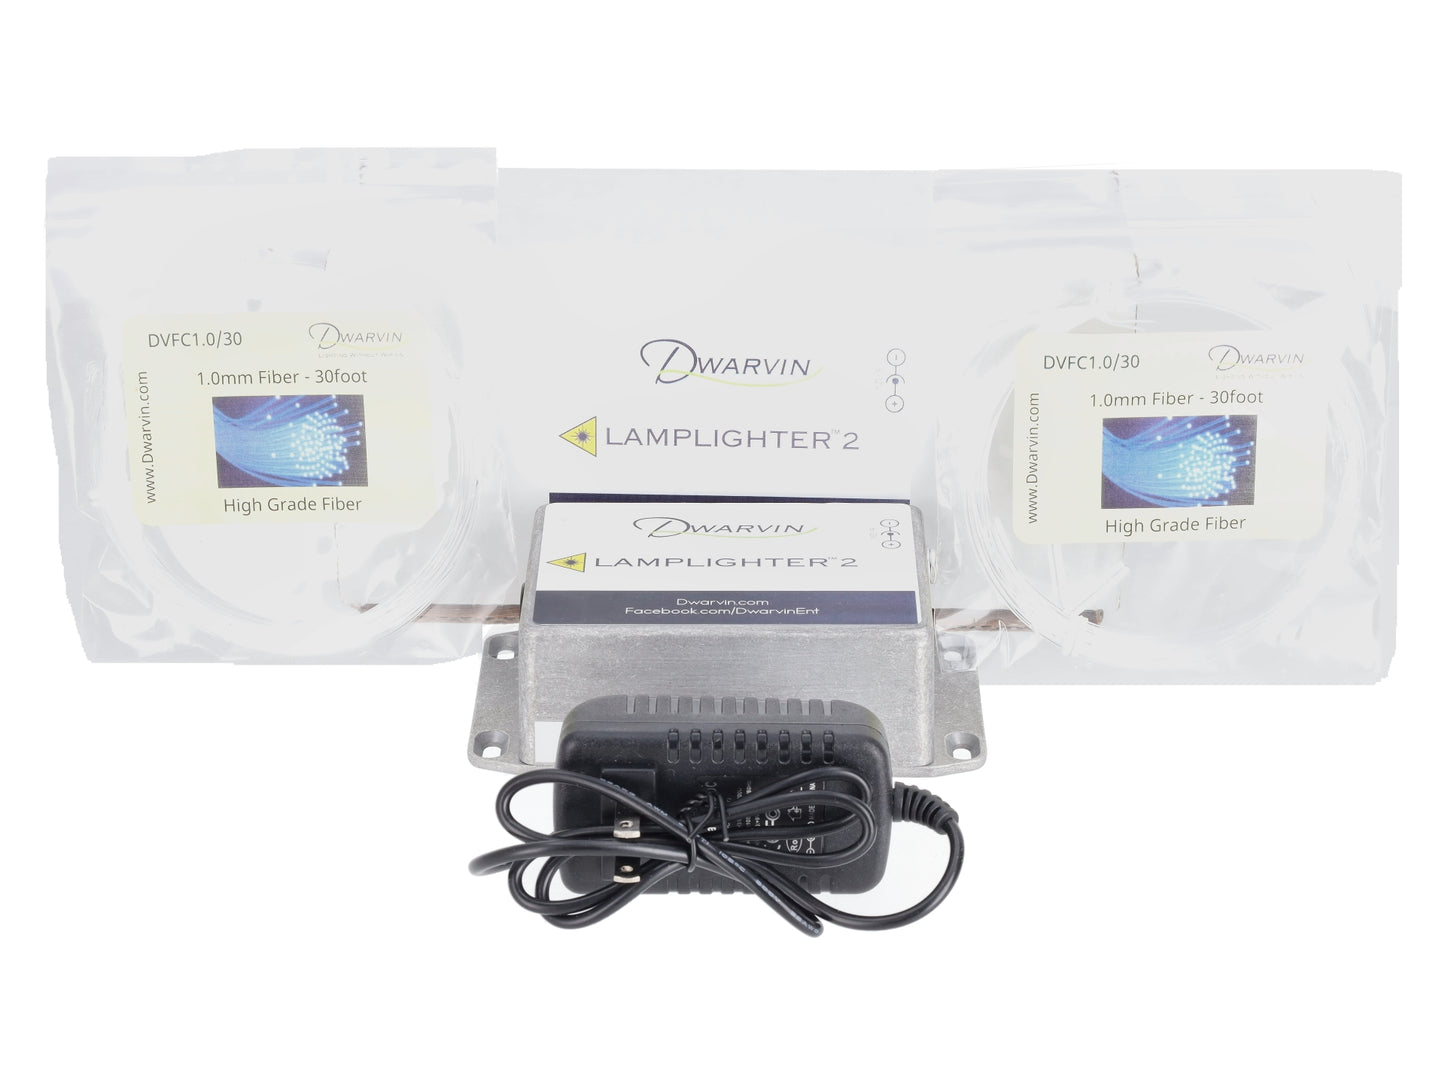 Dwarvin DVSK201 Lamplighter 2 Starter Kit with 2 Packets of 1.0mm Fiber